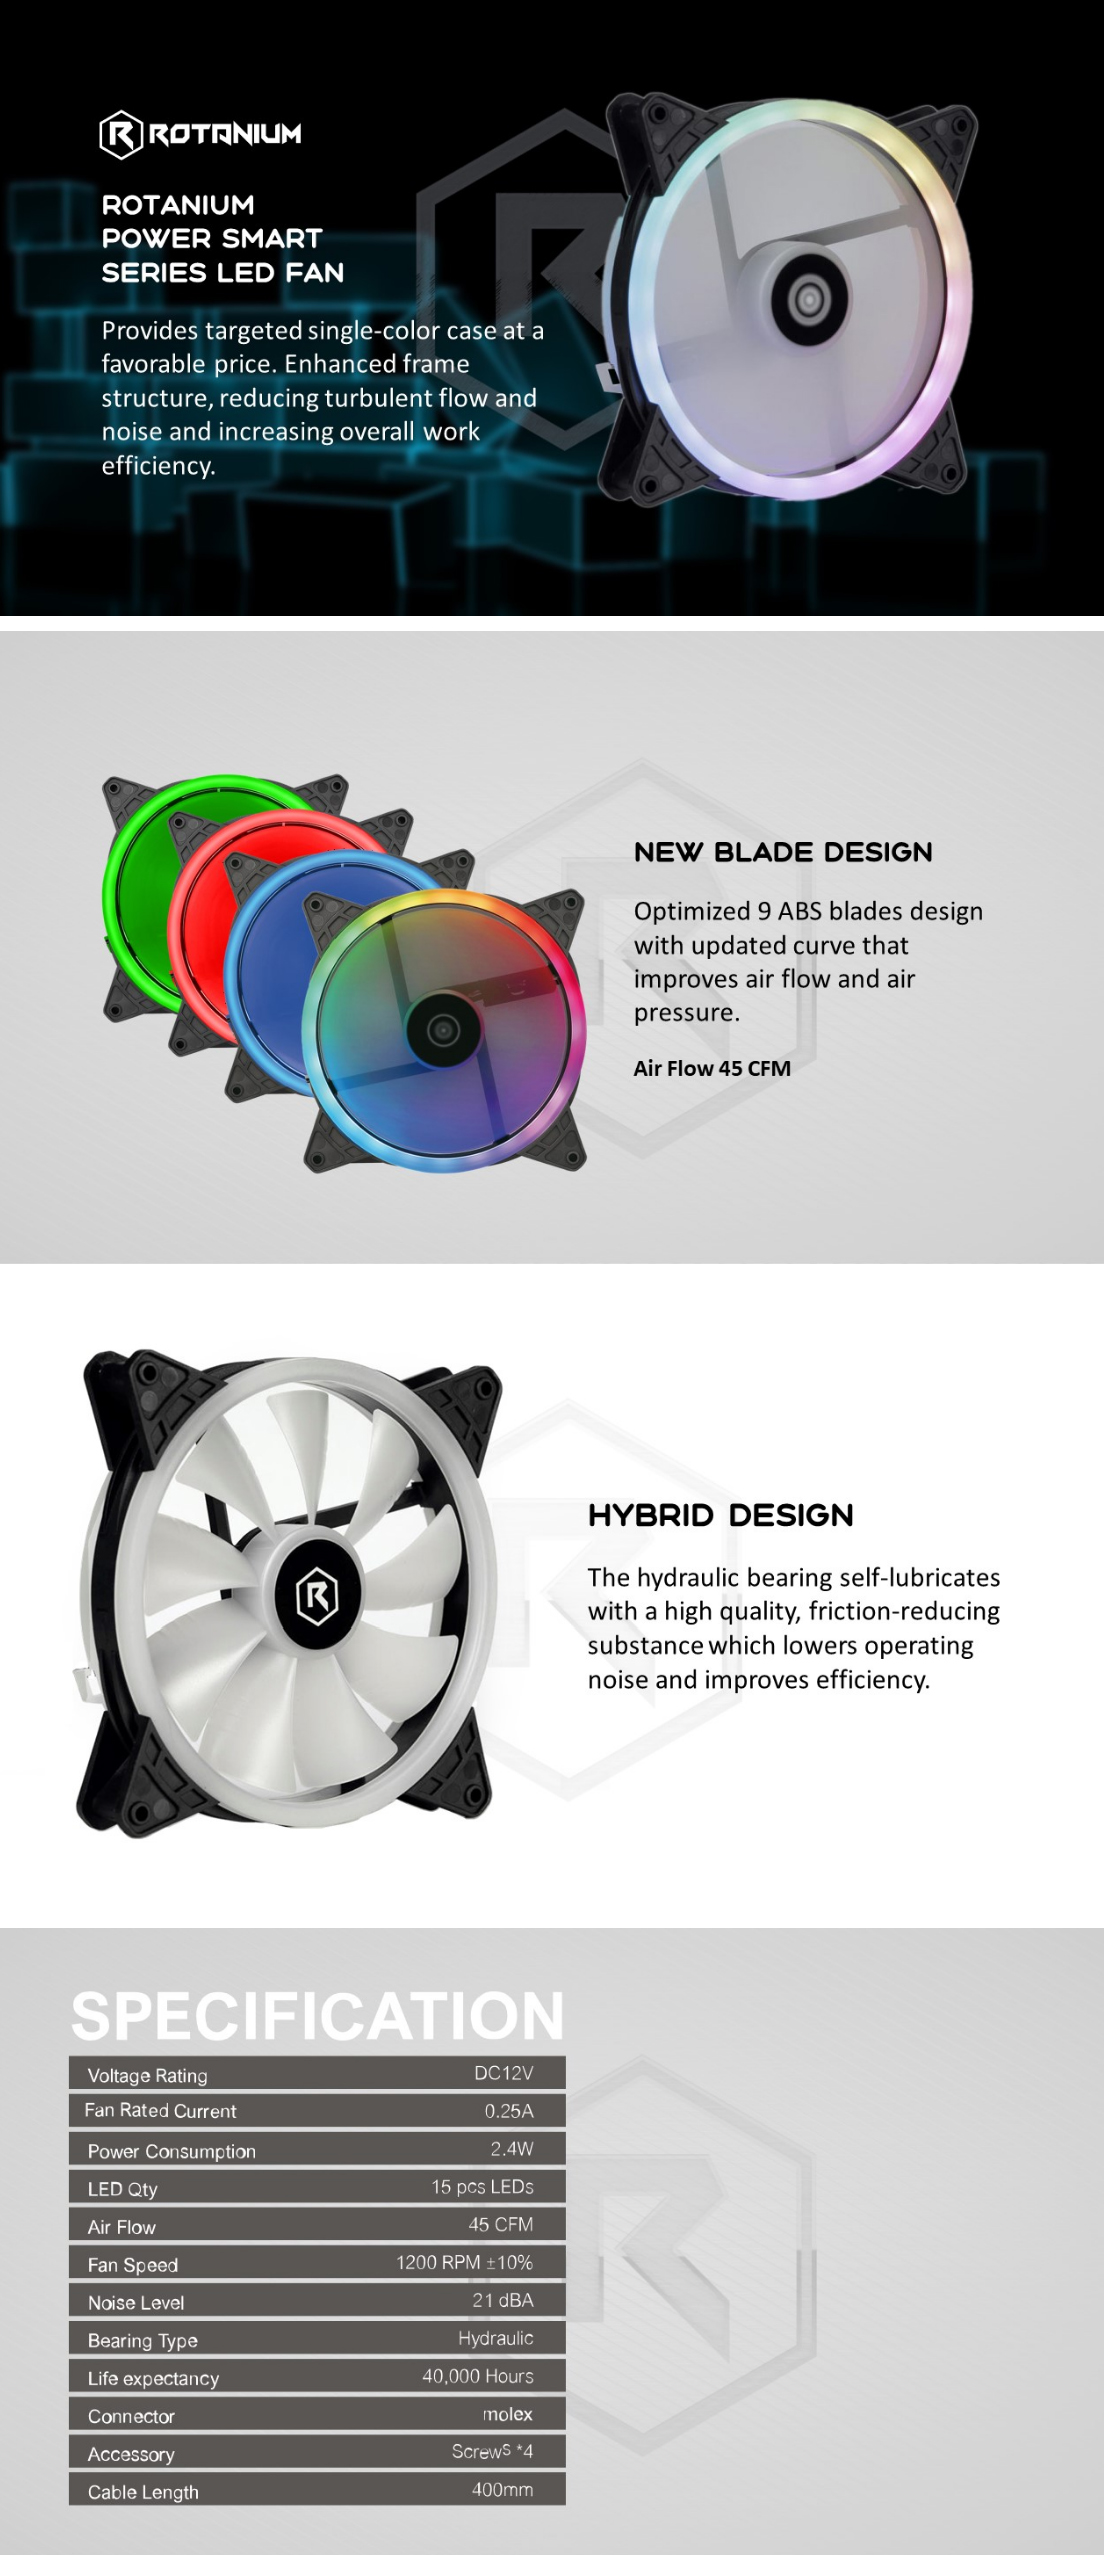 140mm-Case-Fans-Rotanium-140mm-Dual-Ring-Molex-LED-Case-Fan-Rainbow-2